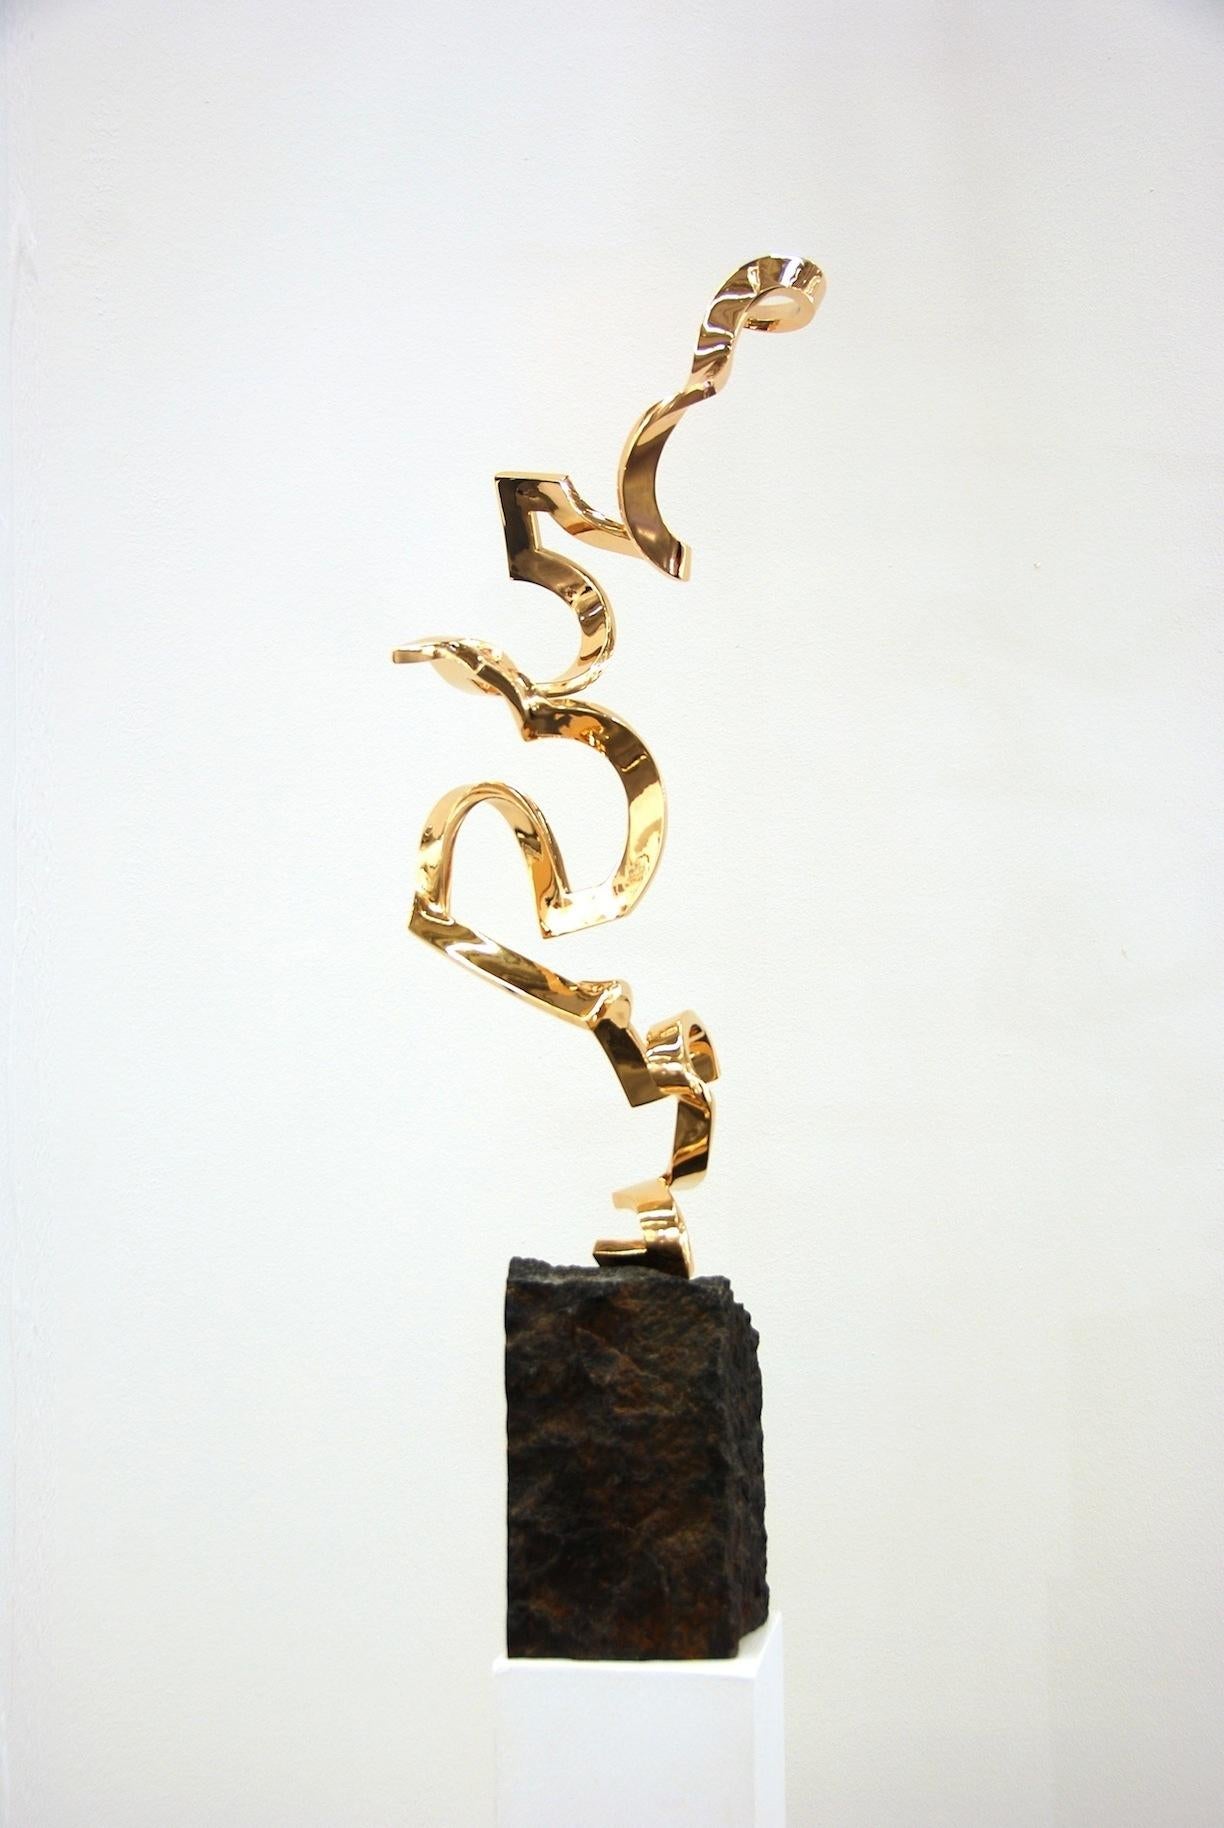 Künstler: Kuno Vollet

Titel: Leicht wie Luft

MATERIALIEN: Goldglänzend polierte Bronzeskulptur auf Granitsockel

Größe: 65 cm Höhe der oberen Skulptur, Sockel: 18x 18 cm